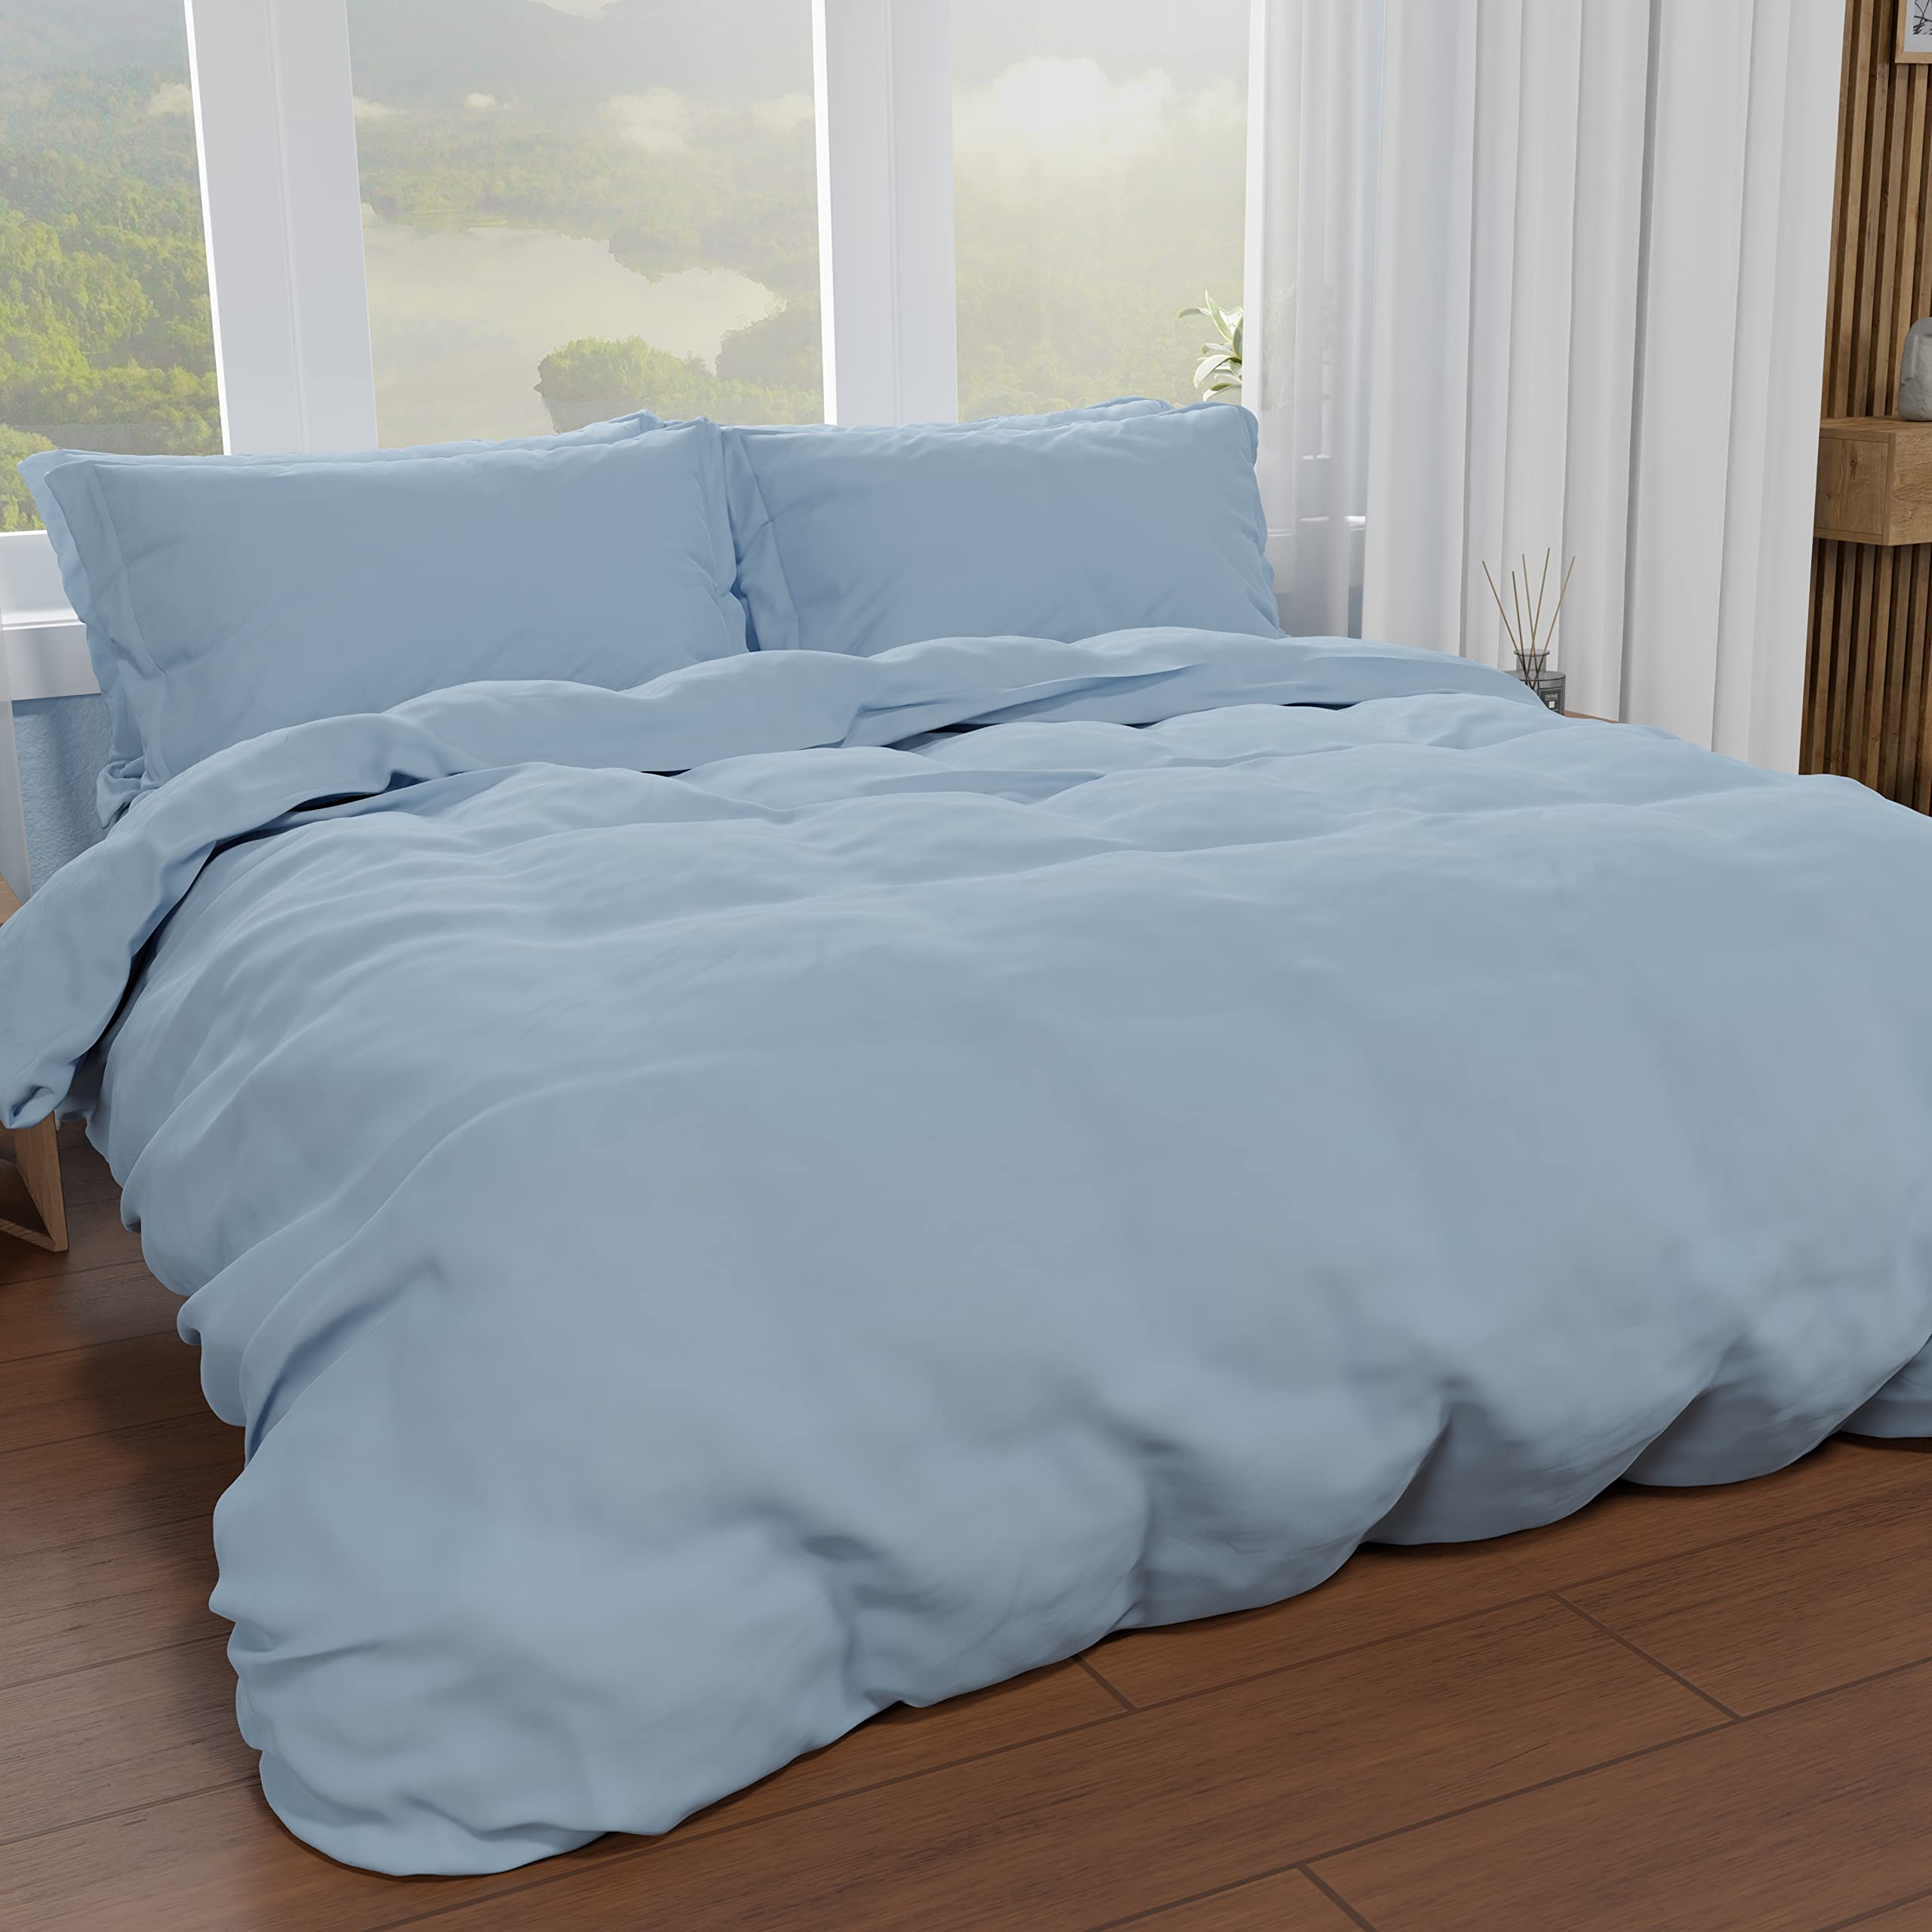 PETTI Artigiani Italiani - Bettbezug für französisches Bett, Bettbezug und Kissenbezüge aus Mikrofaser, einfarbig hellblau, 100% Made in Italy